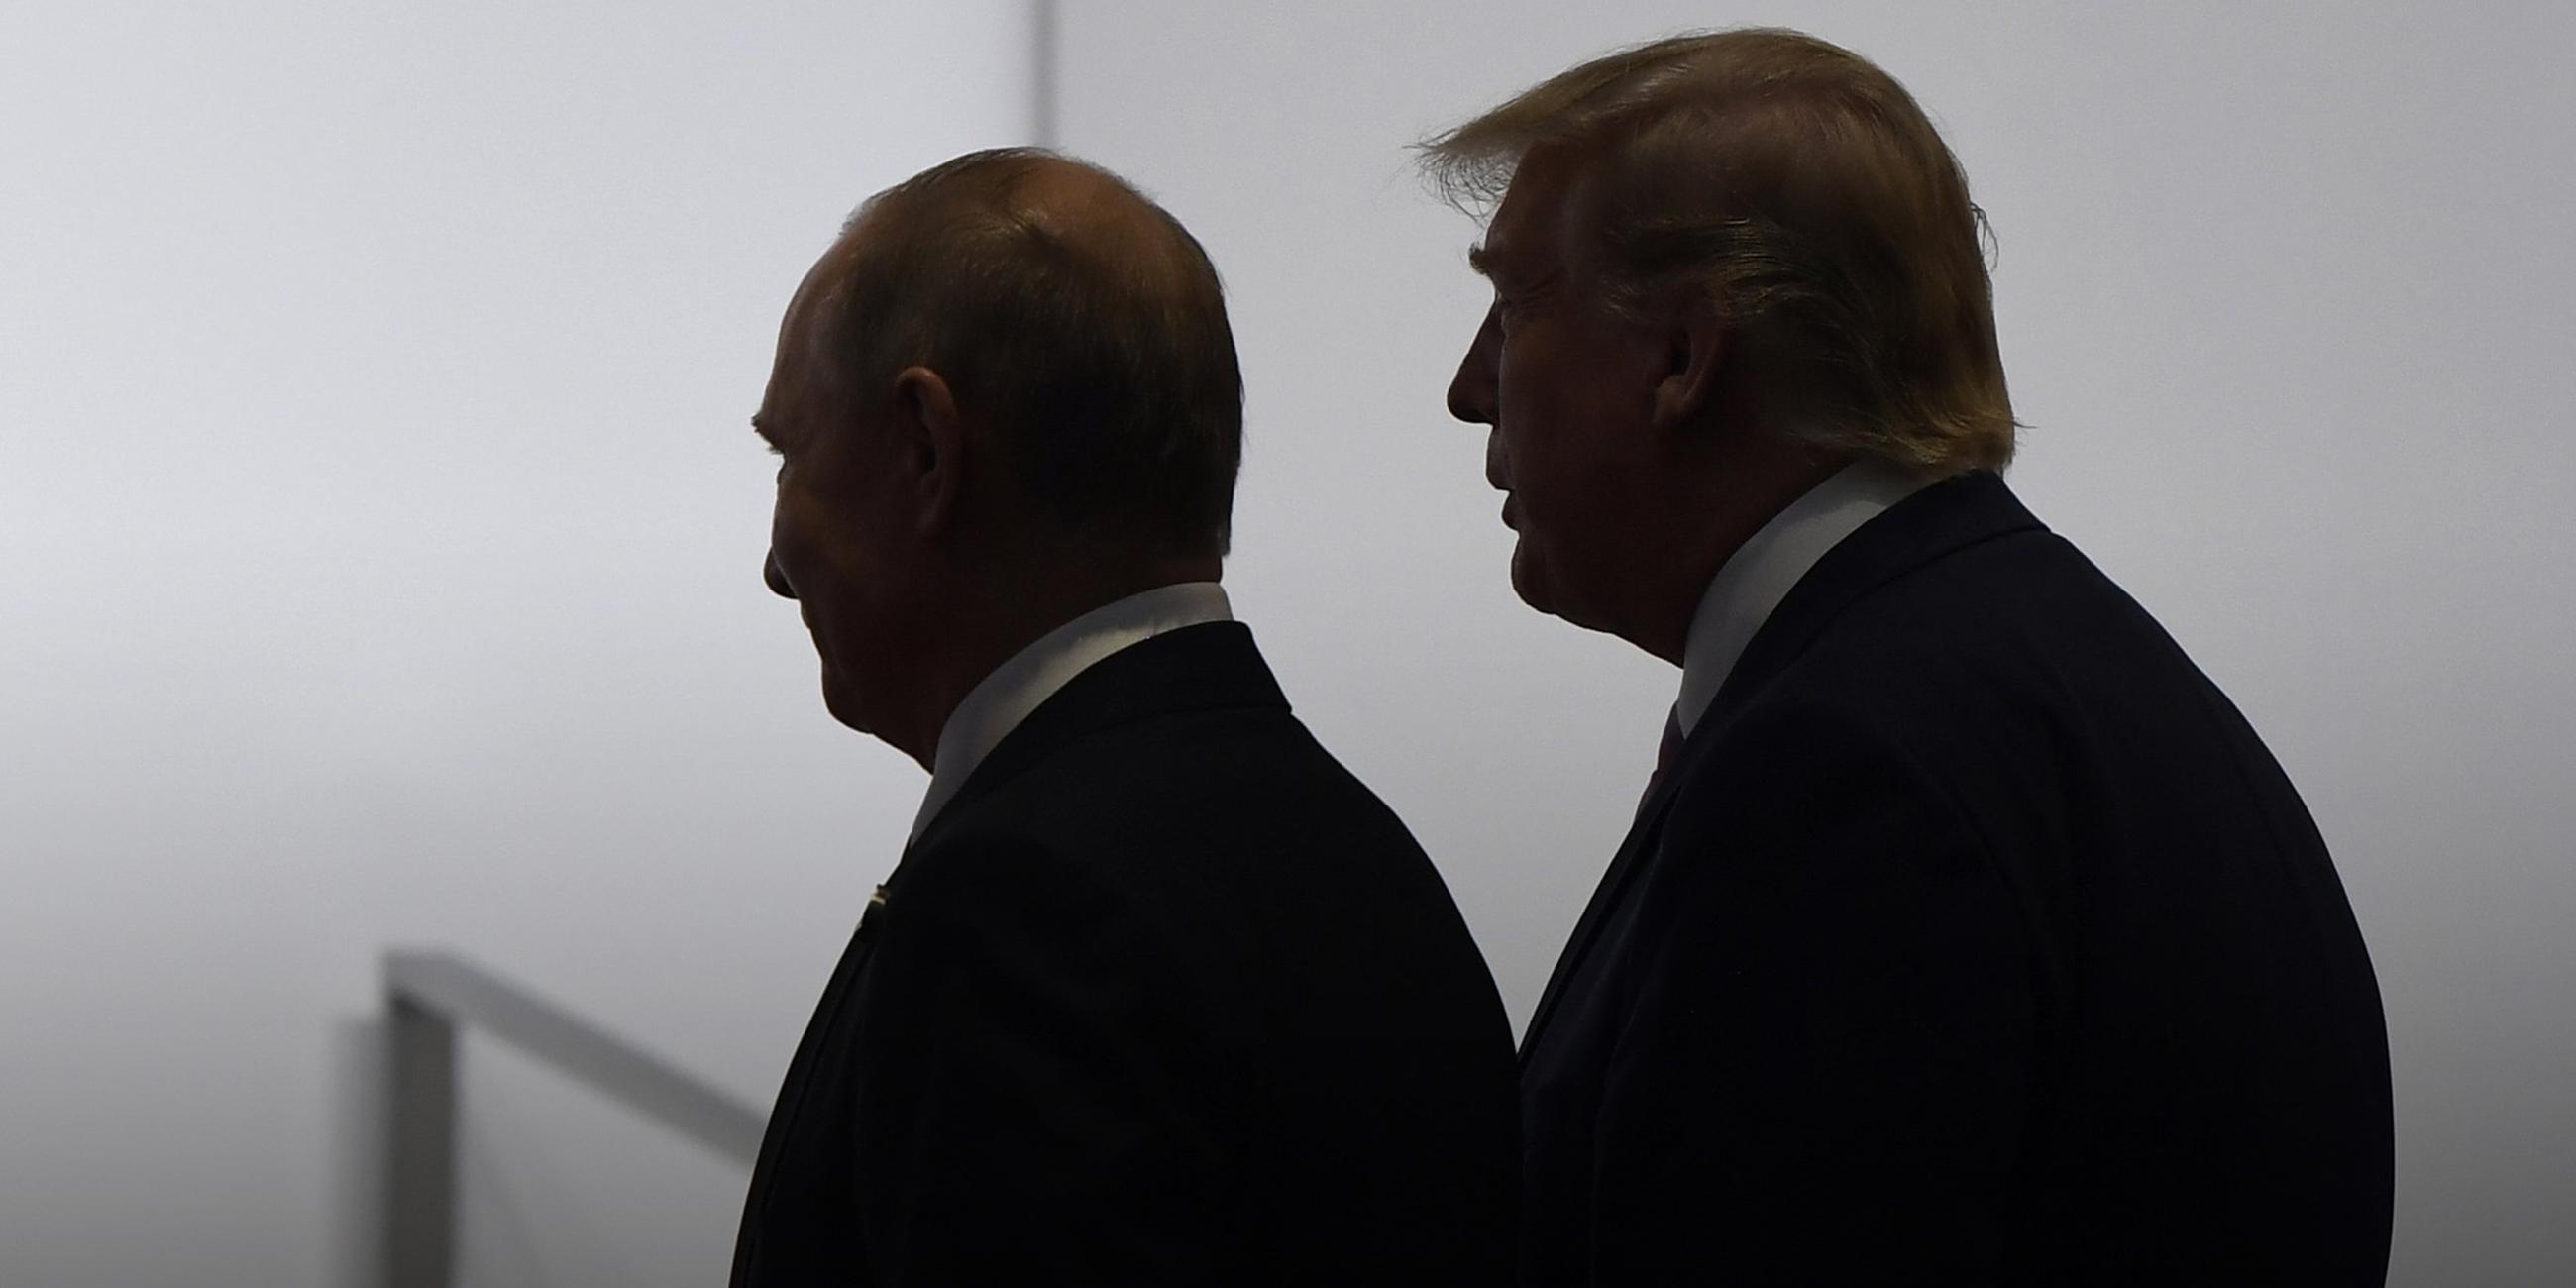 Archiv: Die Silhouetten von Donald Trump und Wladimir Putin